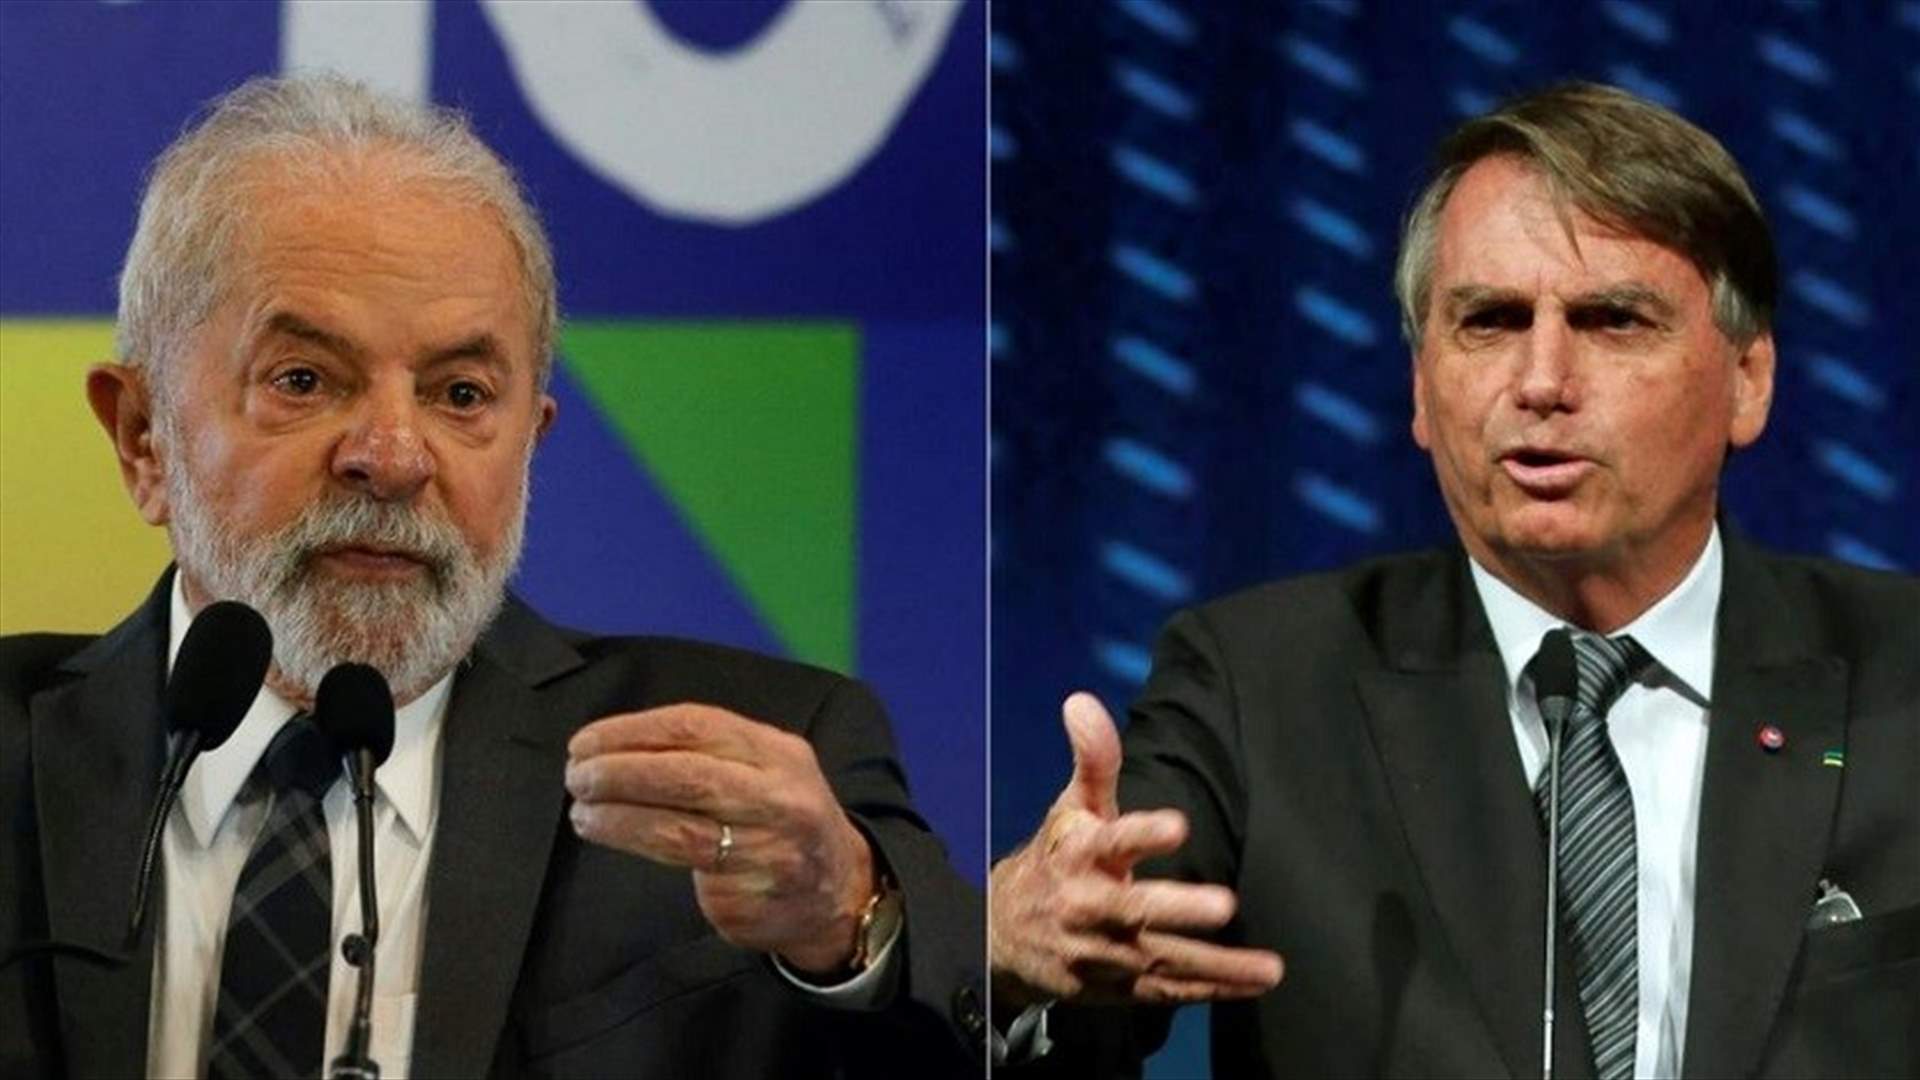 البرازيل... بولسونارو ولولا يتراشقان التهم في مناظرة تلفزيونية قبل أيام من الانتخابات